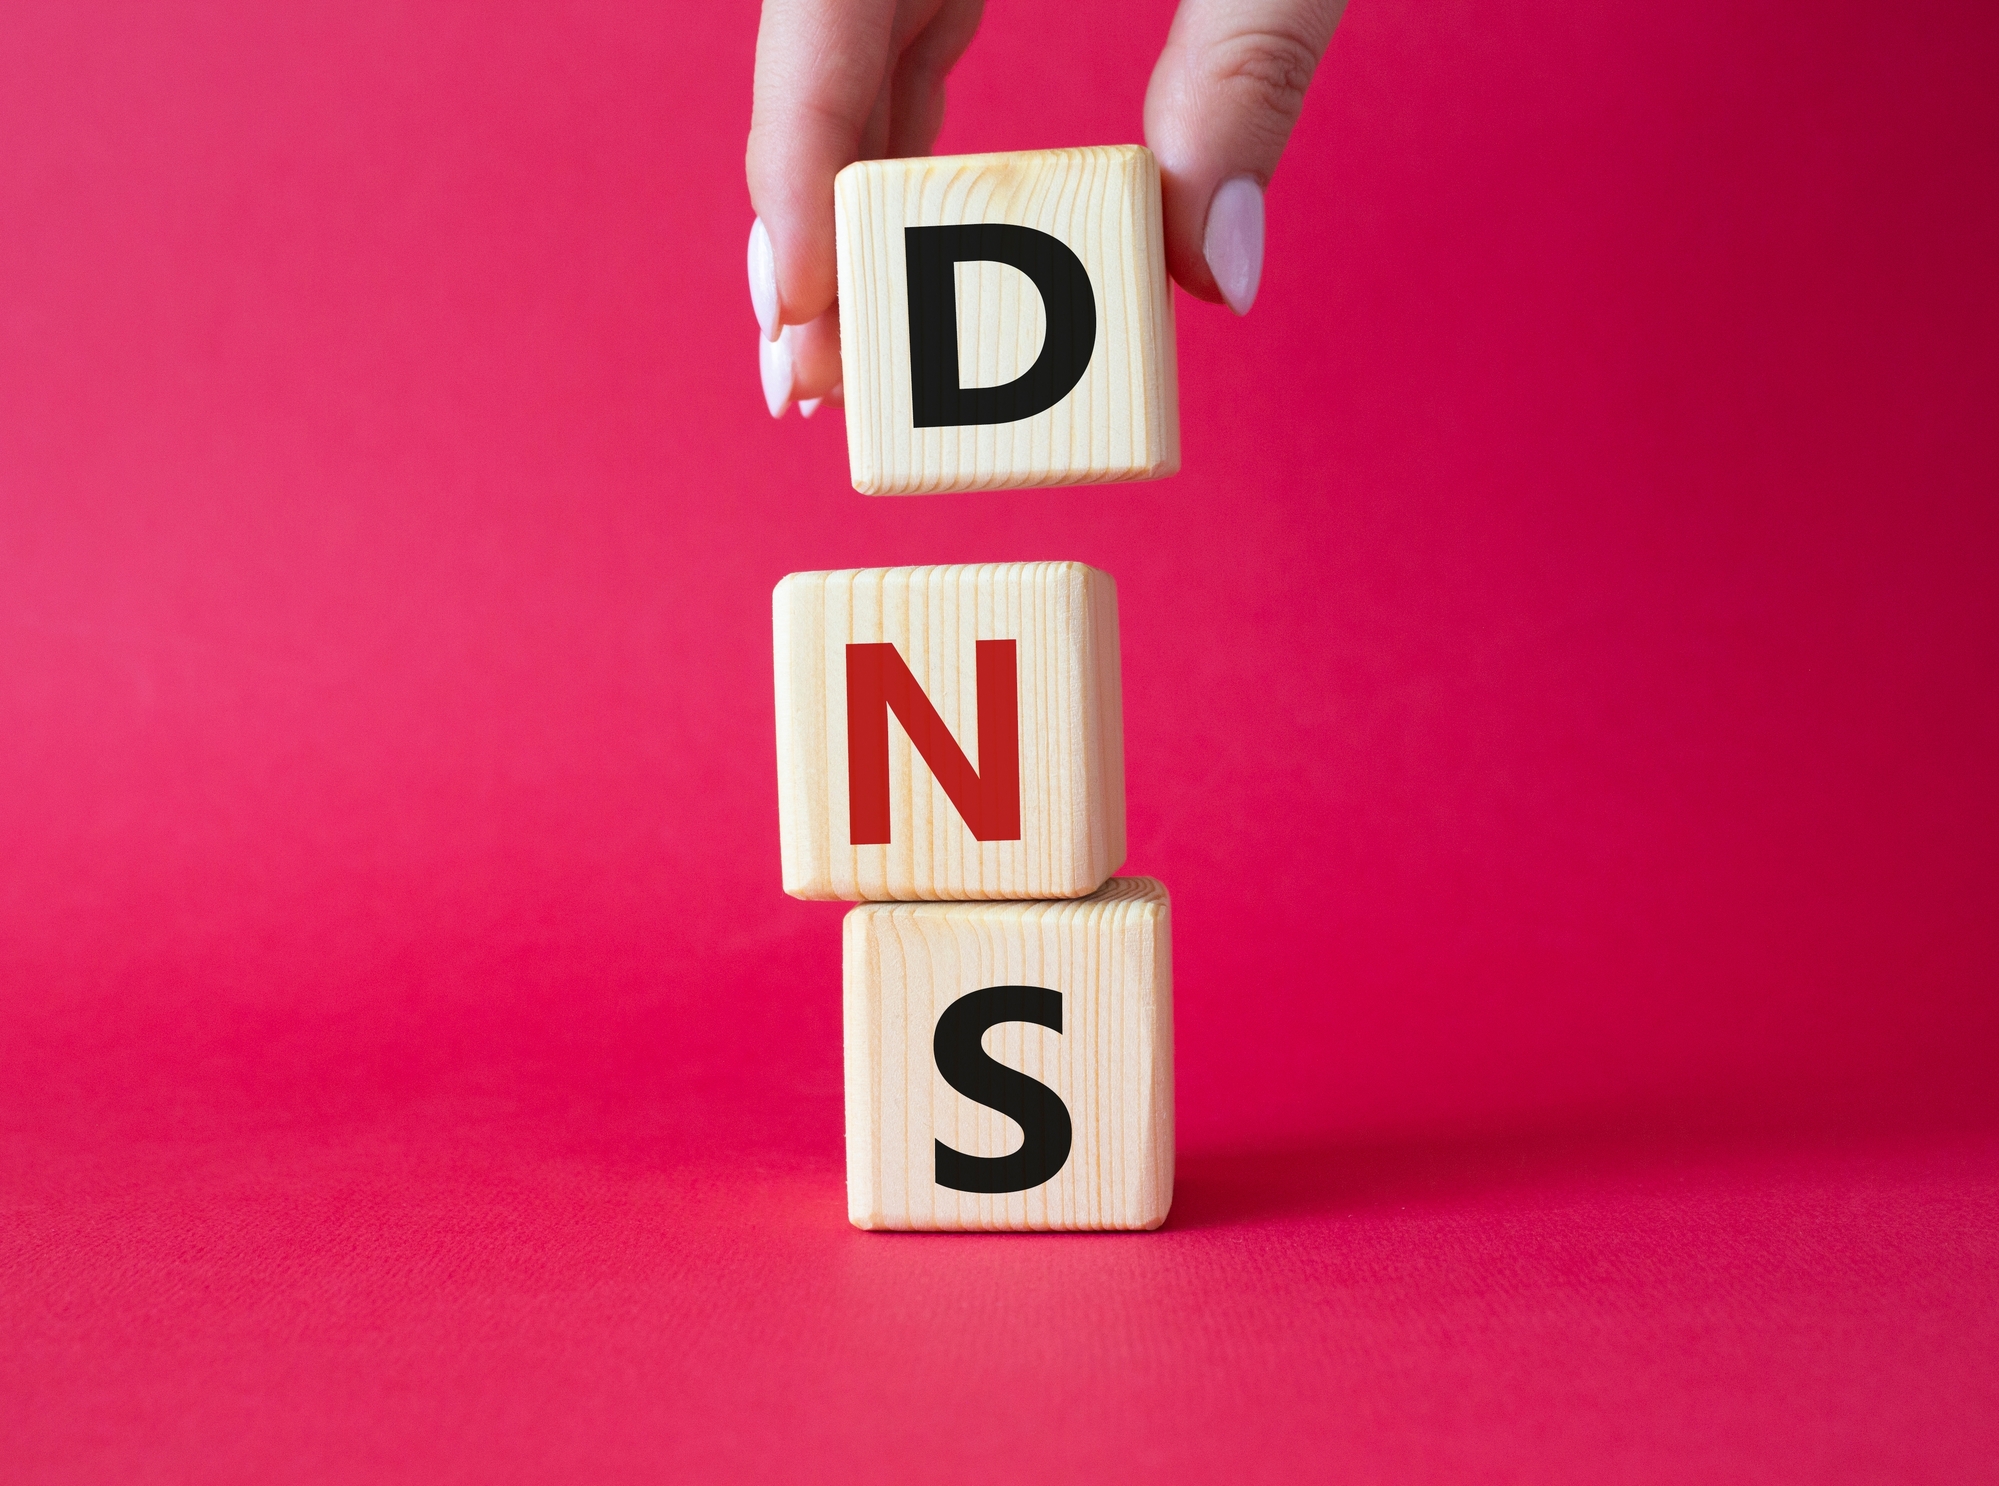 Filtrage DNS en France : ces pionniers de l'Internet disent non !